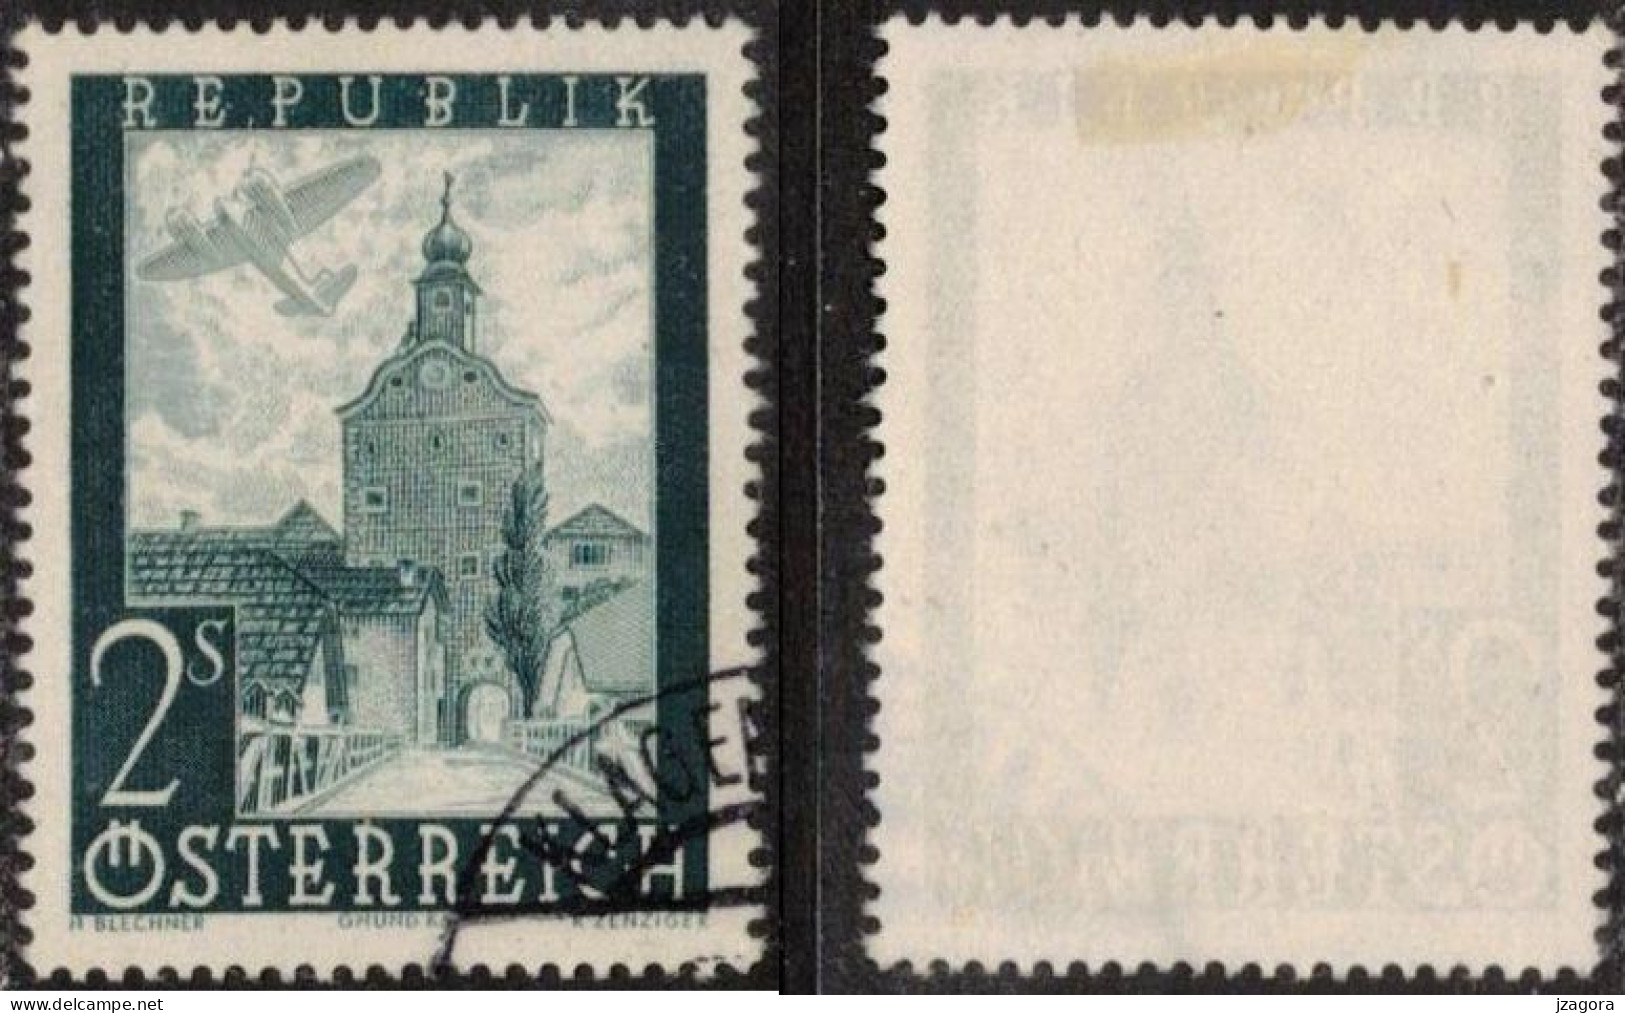 ARCHITECTURE HISTORY STADTTURM CITY TOWER GRUMD AUSTRIA ÖSTERREICH AUTRICHE 1947 MI 824 Sc C49 Flugpost Air Mail - Usati